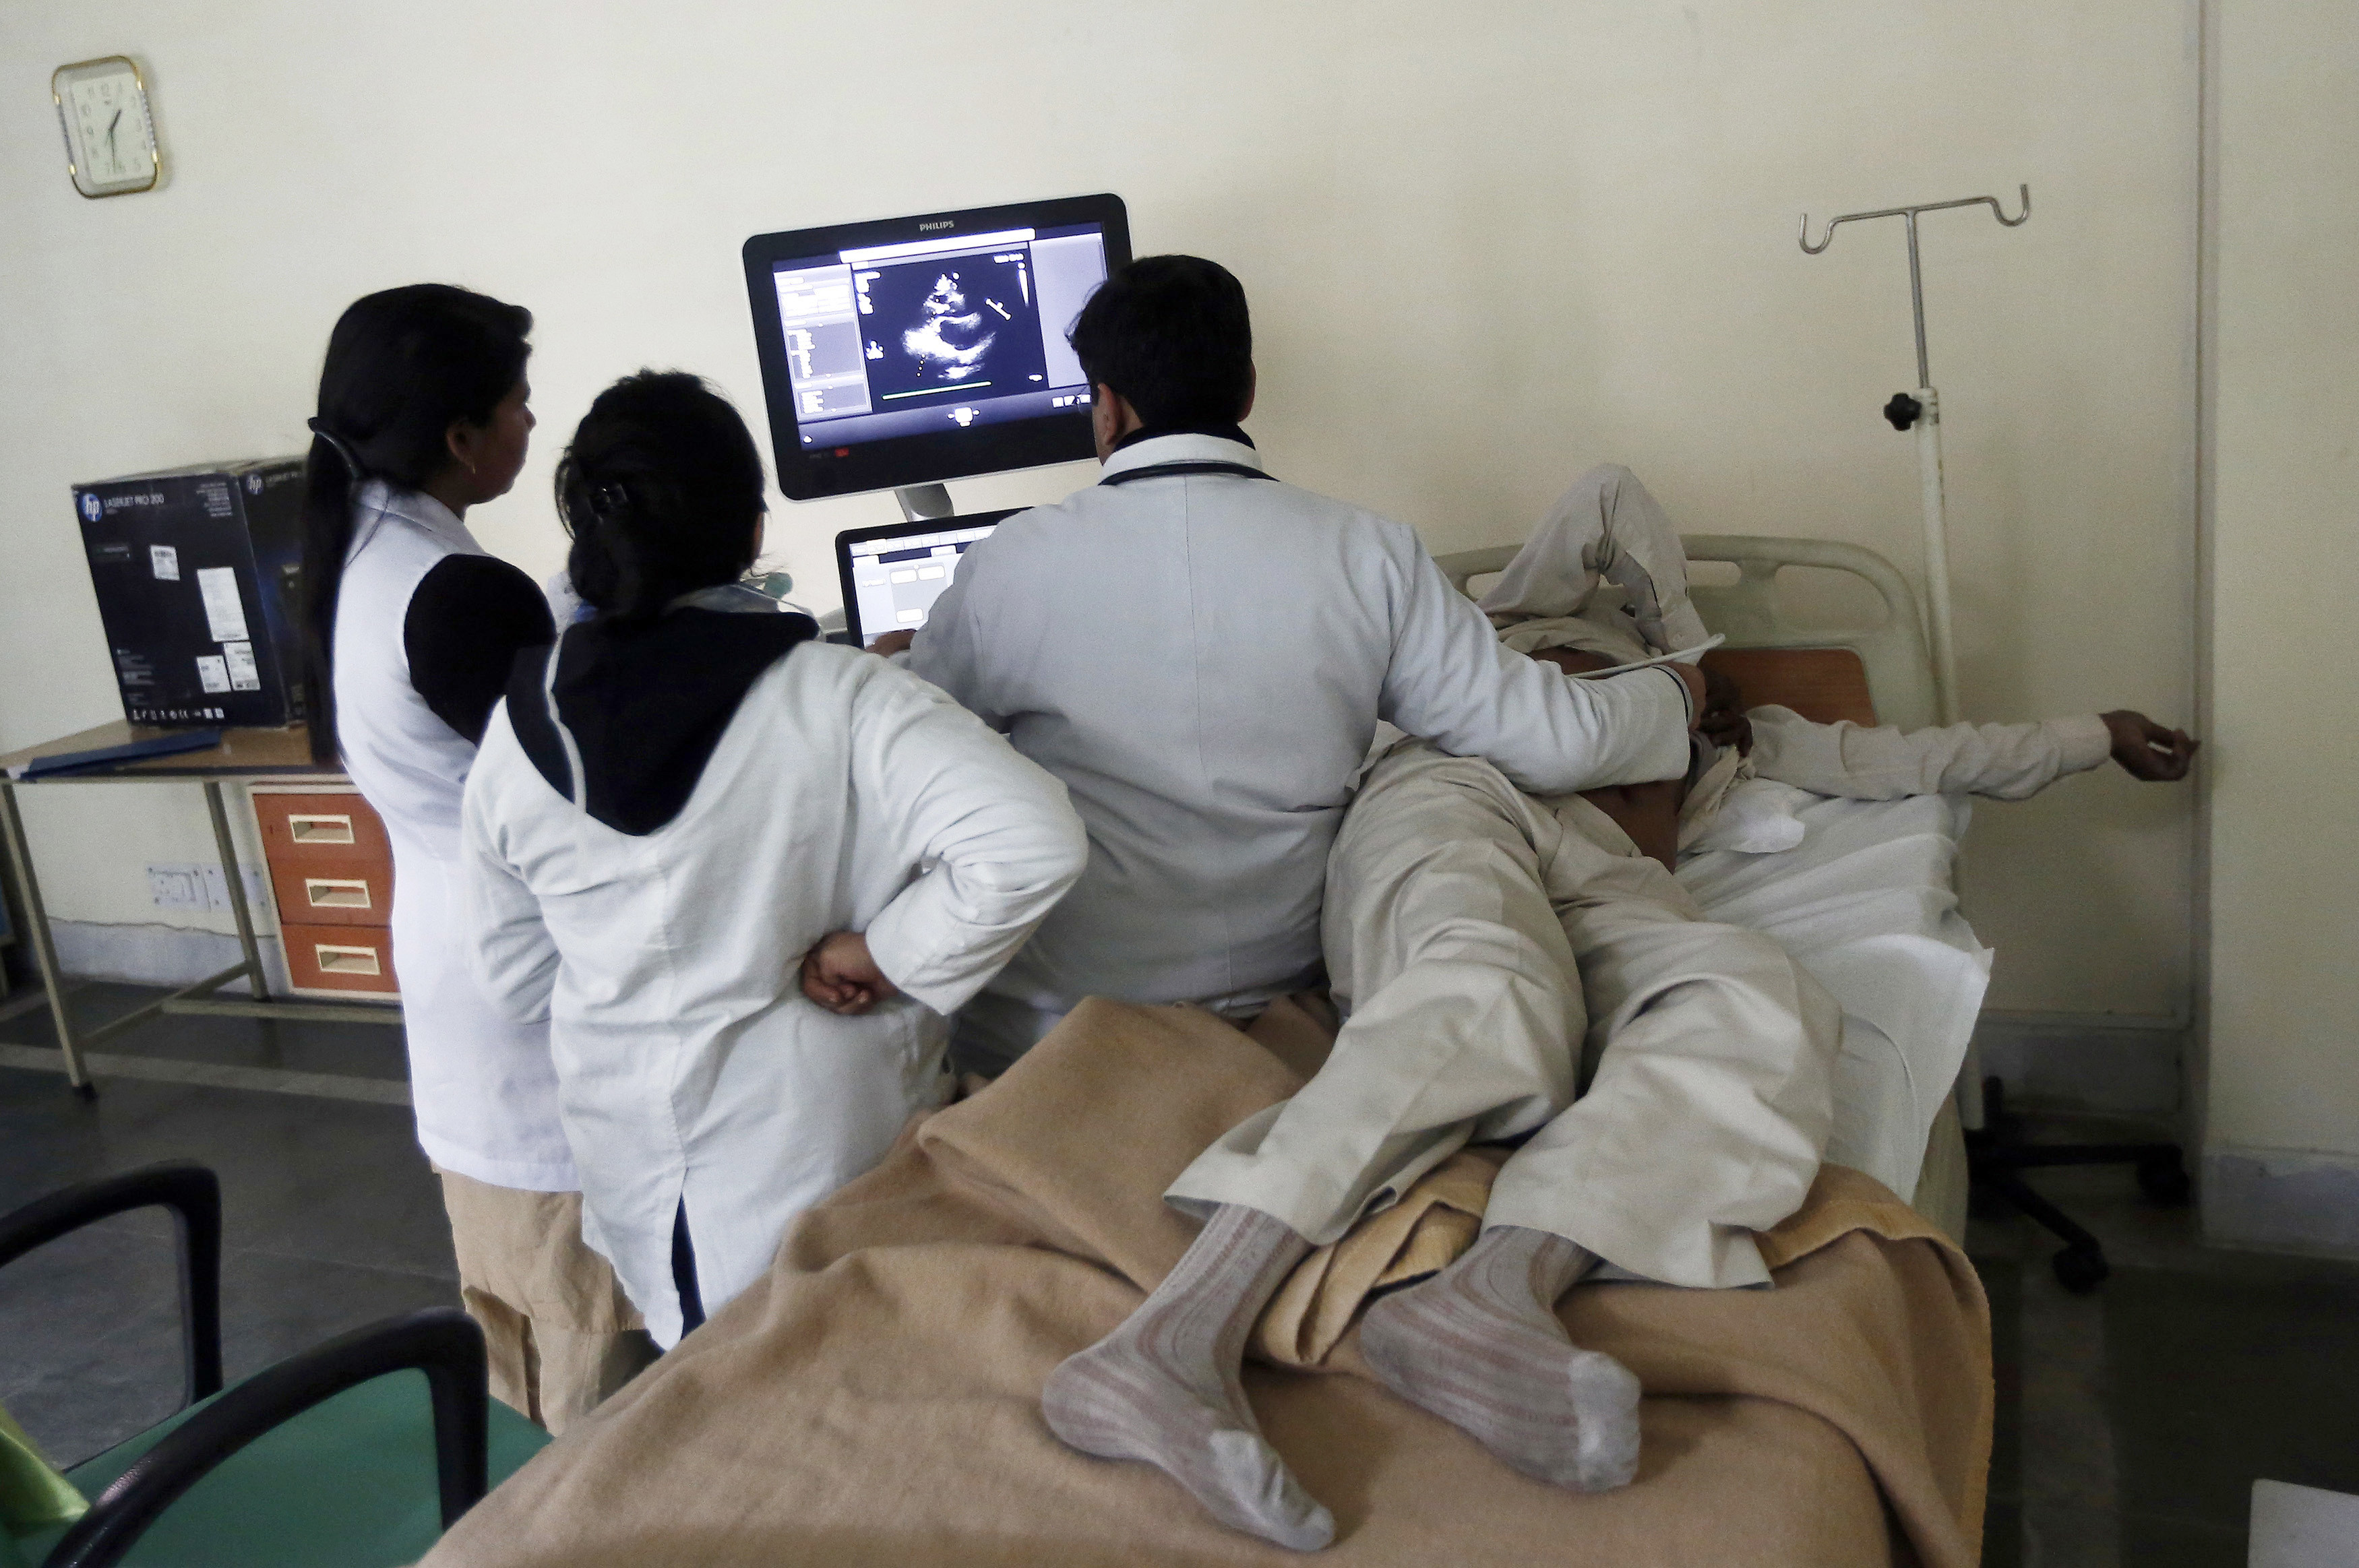 2015年1月19日，在新德里的贾纳克普里超级专科医院，医生正在检查一名病人的超声波扫描。印度首都中心空荡荡的医院象征着公共卫生系统的瘫痪，该系统的一些健康指标是世界上最糟糕的。这个国家有12亿人口，其中许多人要么选择昂贵的私人医疗服务，要么根本不接受医疗服务。印度总理纳伦德拉·莫迪(Narendra Modi)宣称要实现提供全民公共医疗覆盖的目标，面临着许多挑战，但最艰巨的挑战之一是结束官员们一直无法使用预算的僵局。照片摄于2015年1月19日。路透社/Adnan Abidi(印度-标签:健康政治)